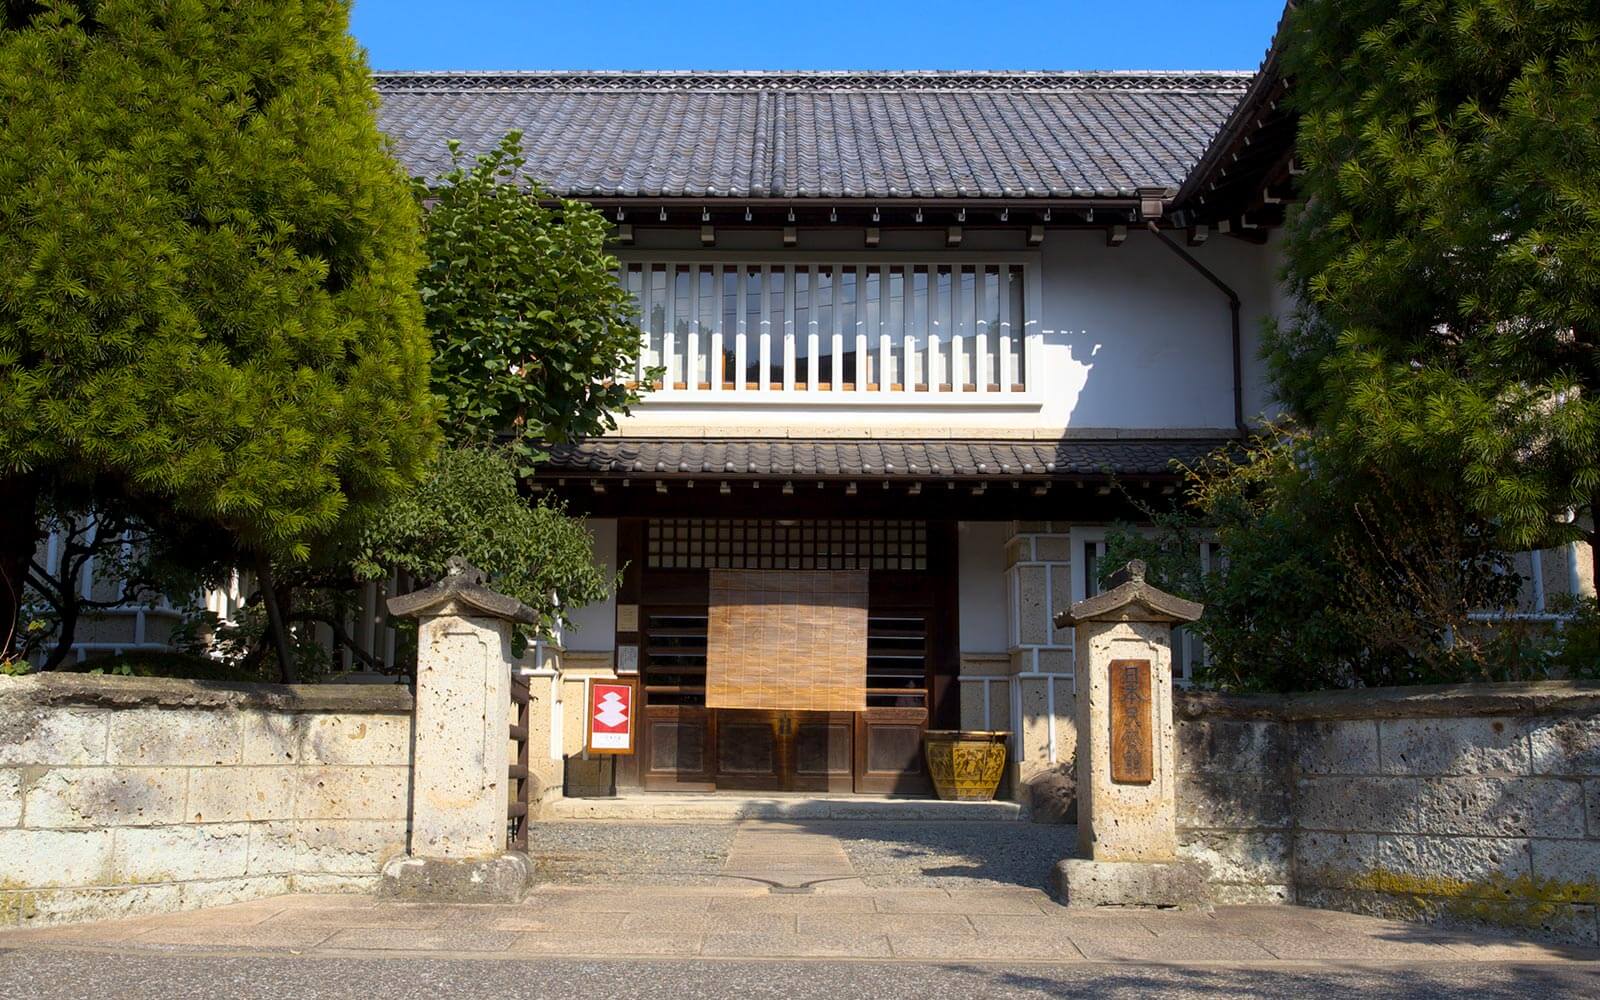 日本民藝館